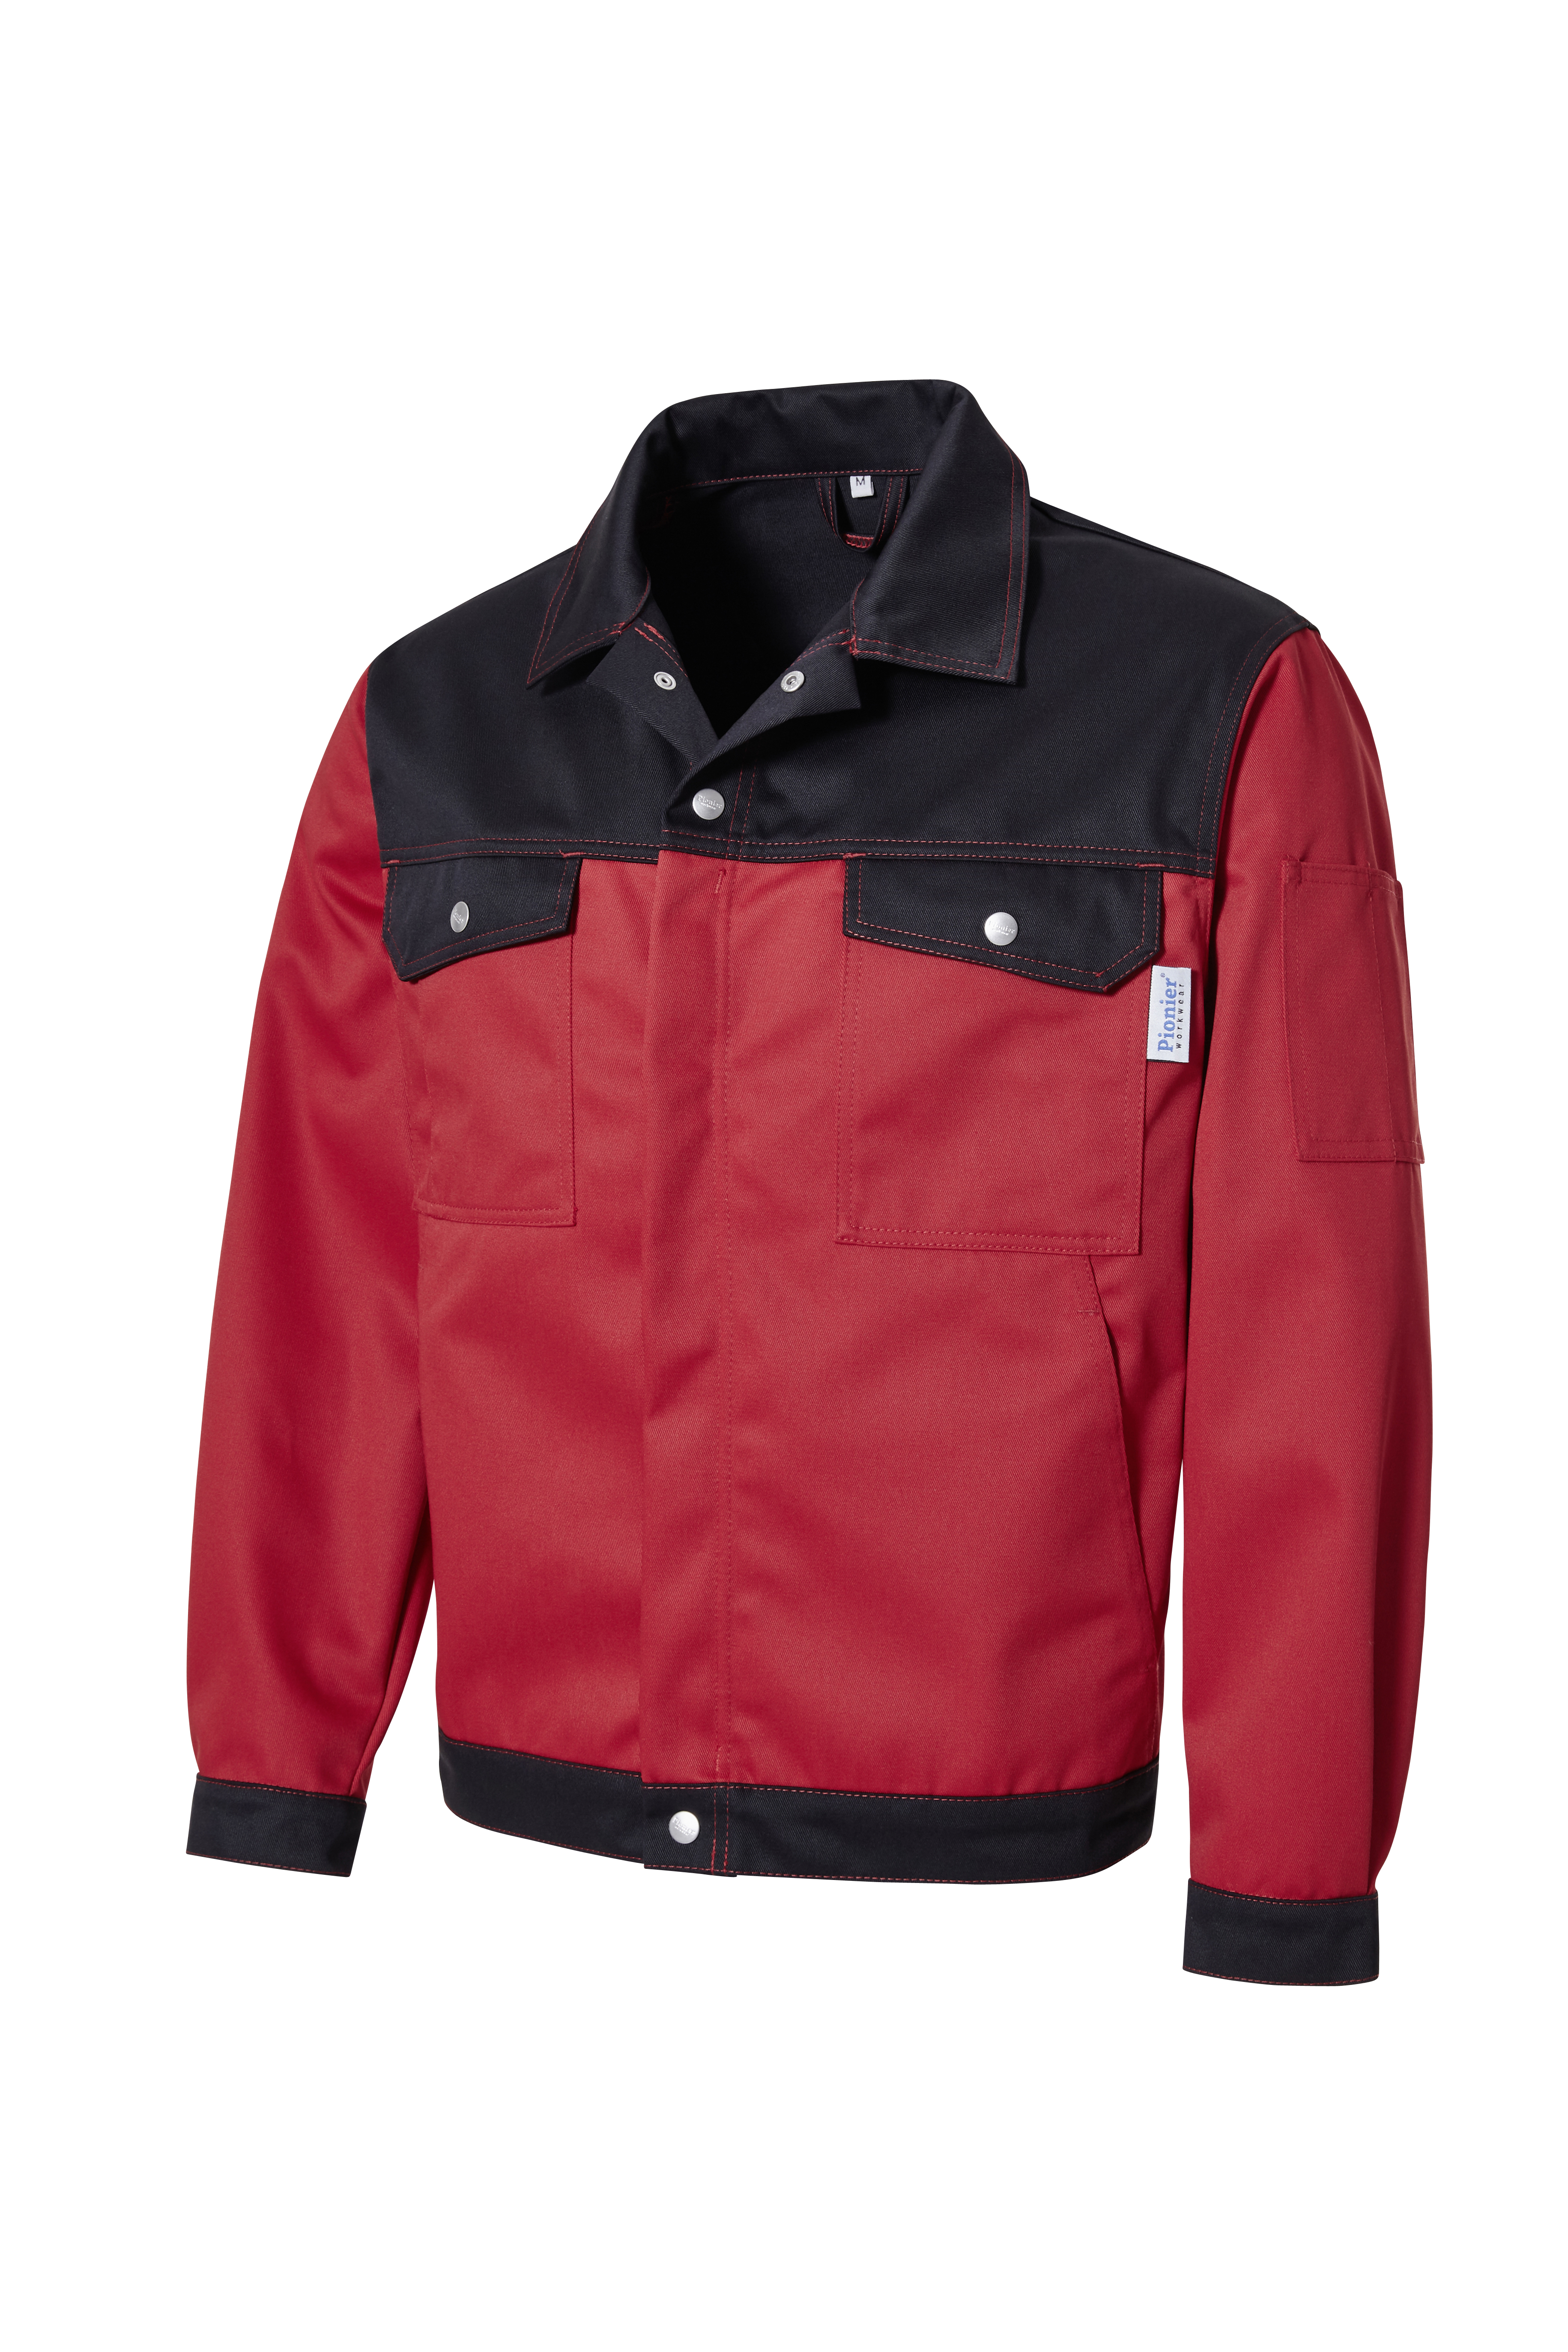 PIONIER Bundjacke Arbeitsjacke Berufsjacke Schutzjacke Arbeitskleidung Berufskleidung rot schwarz